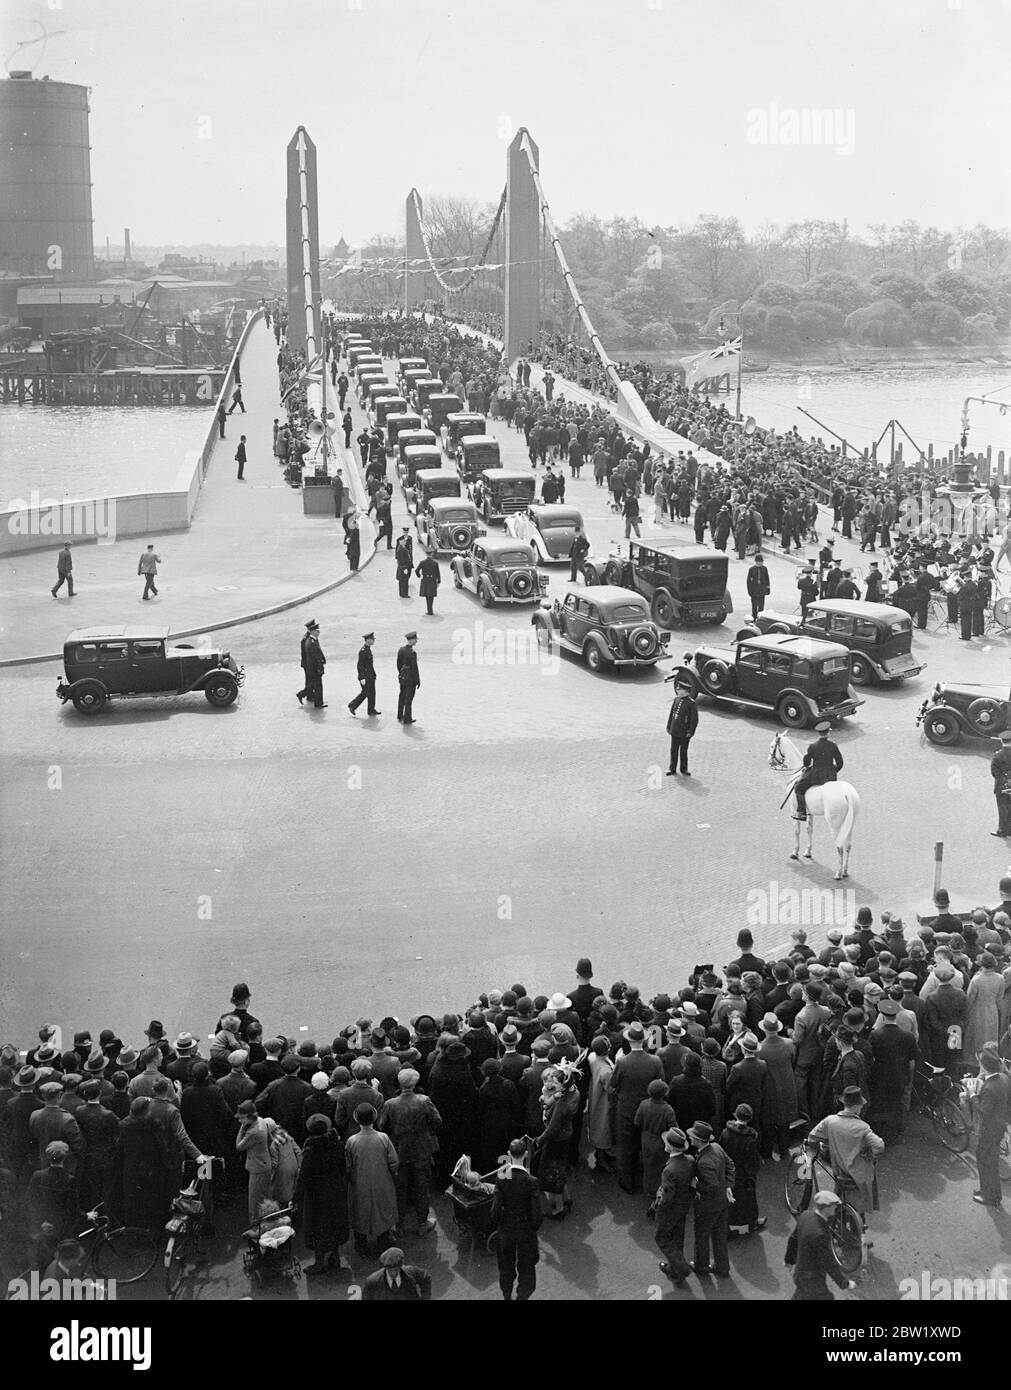 Il signor McKenzie King apre il nuovo ponte di Chelsea. Il primo ministro canadese WL McKenzie King apre il nuovo ponte di Chelsea, Londra. Mostre fotografiche, la processione di automobili che passano sopra il nuovo ponte all'apertura. 6 maggio 1937 Foto Stock